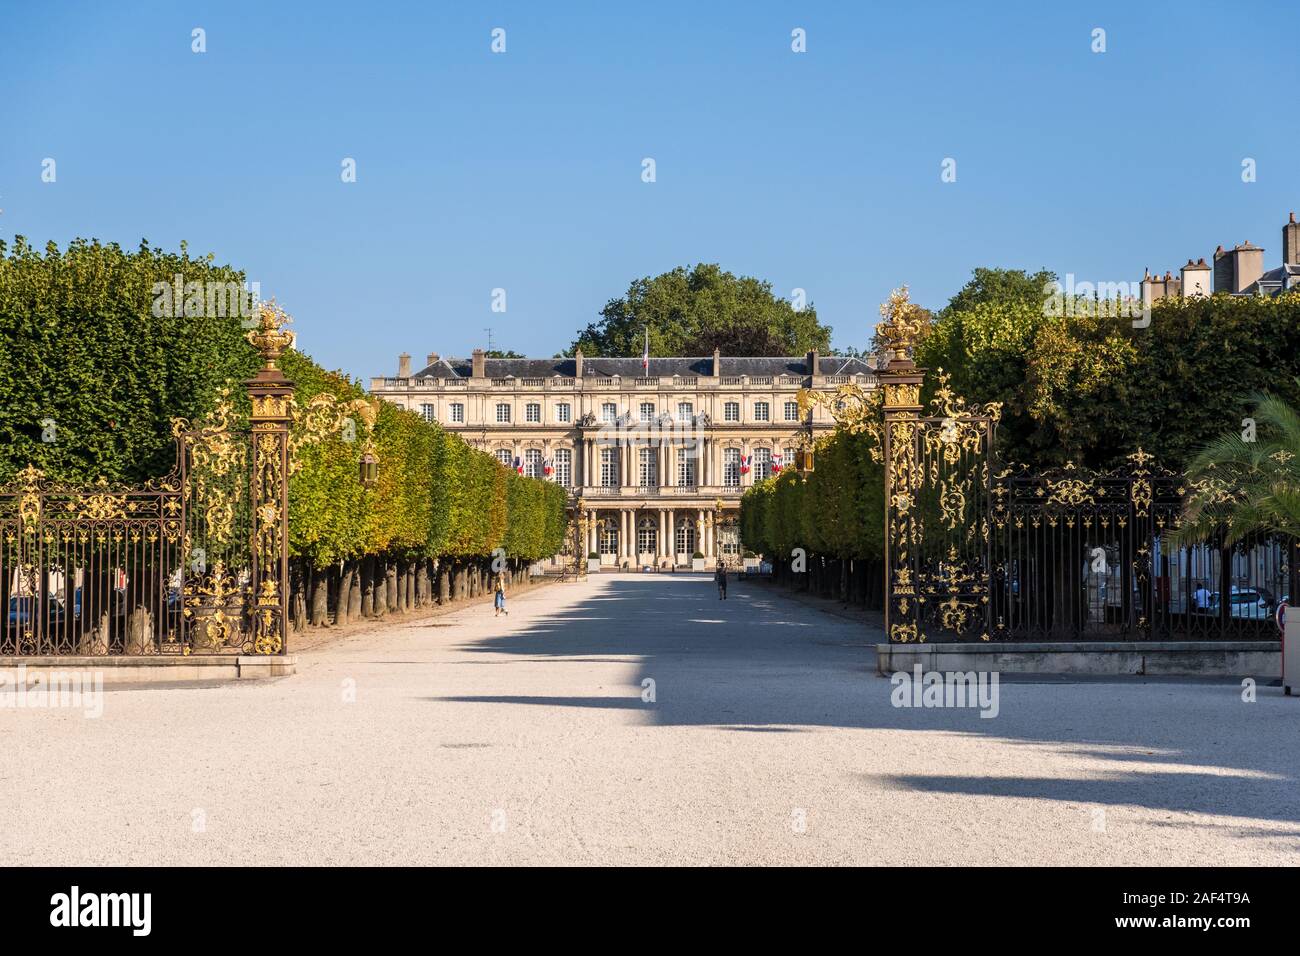 Nancy, Francia - 31 de agosto de 2019: El Palacio del Gobierno en la Plaza de la portadora en la ciudad de Nancy, Lorena, región de Francia Foto de stock